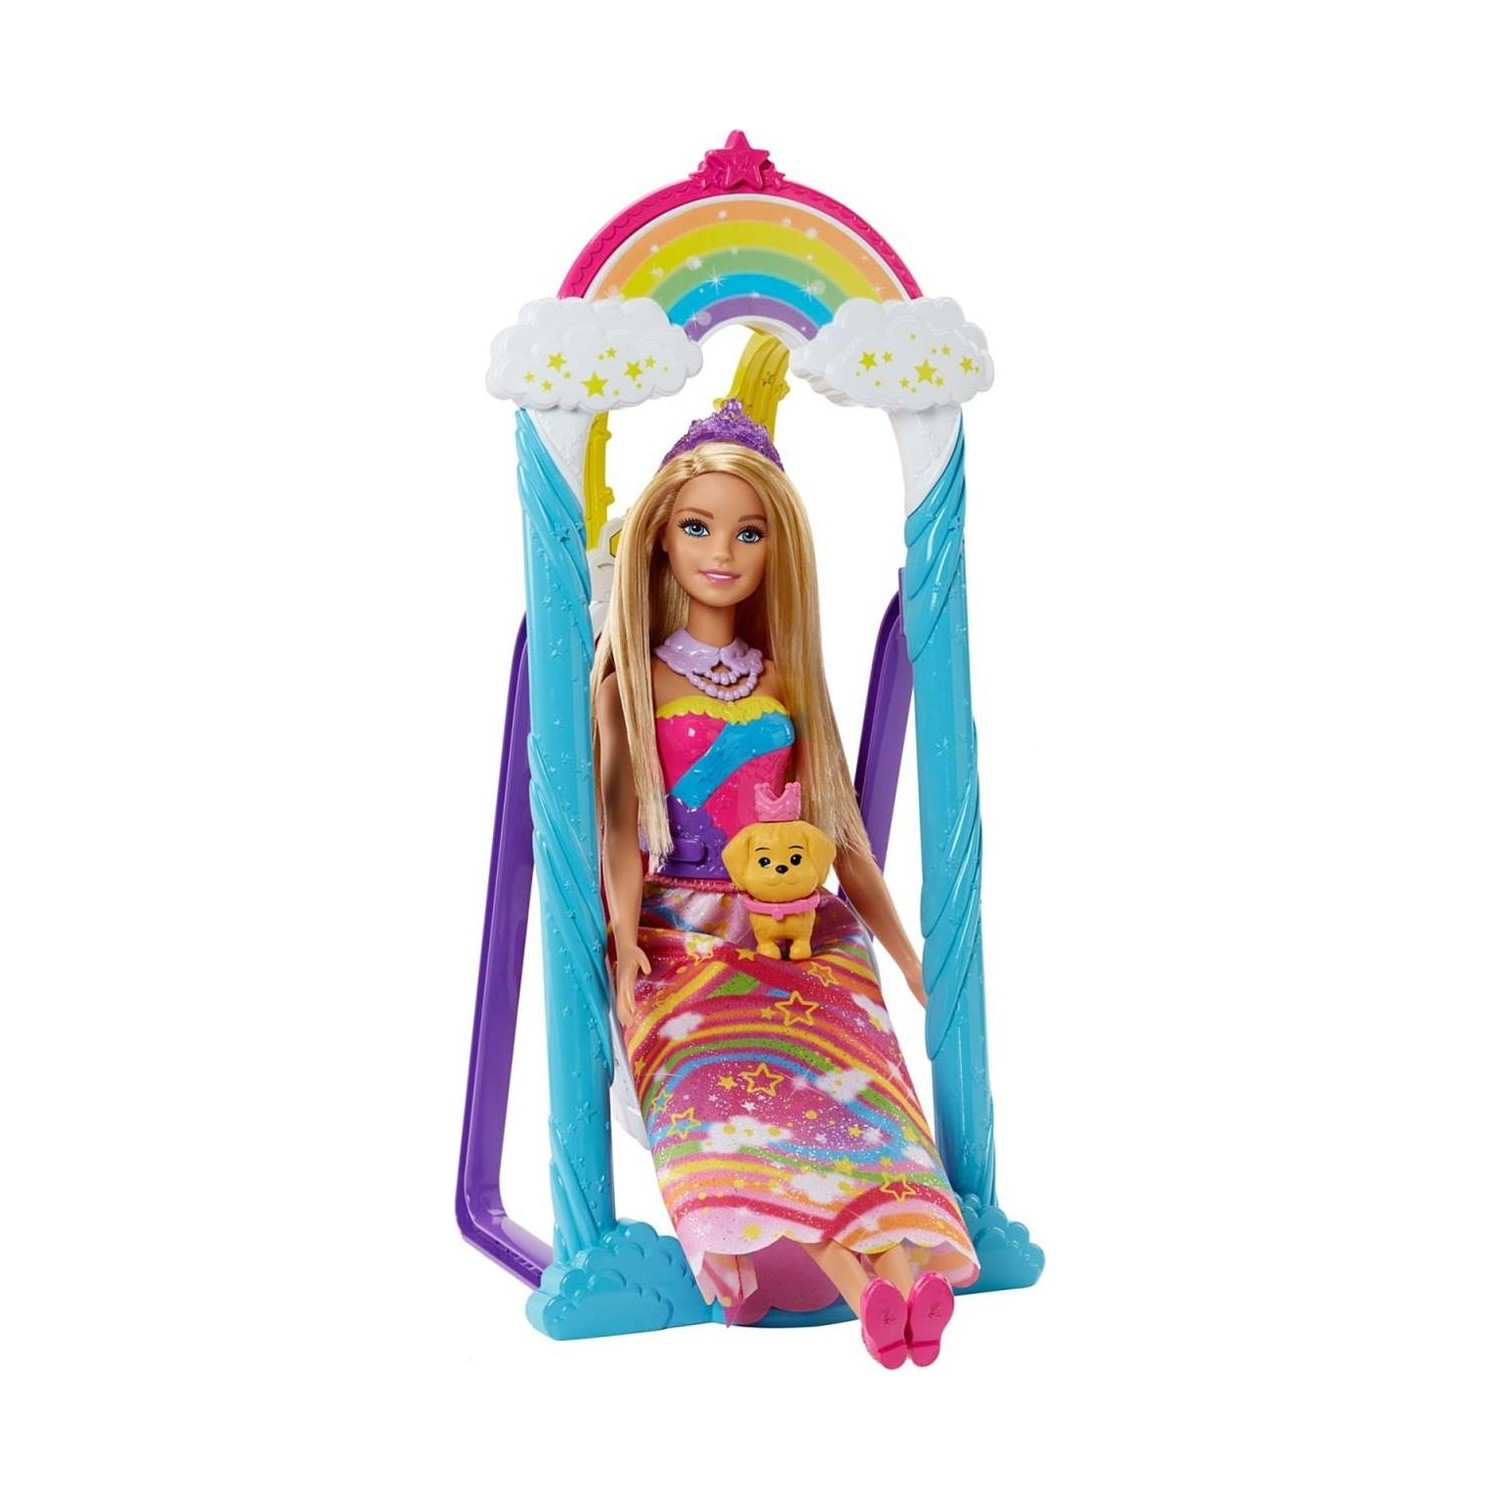 Кукла Barbie Dreamtopia радужная принцесса кукла barbie dreamtopia принцесса 1 gjk13